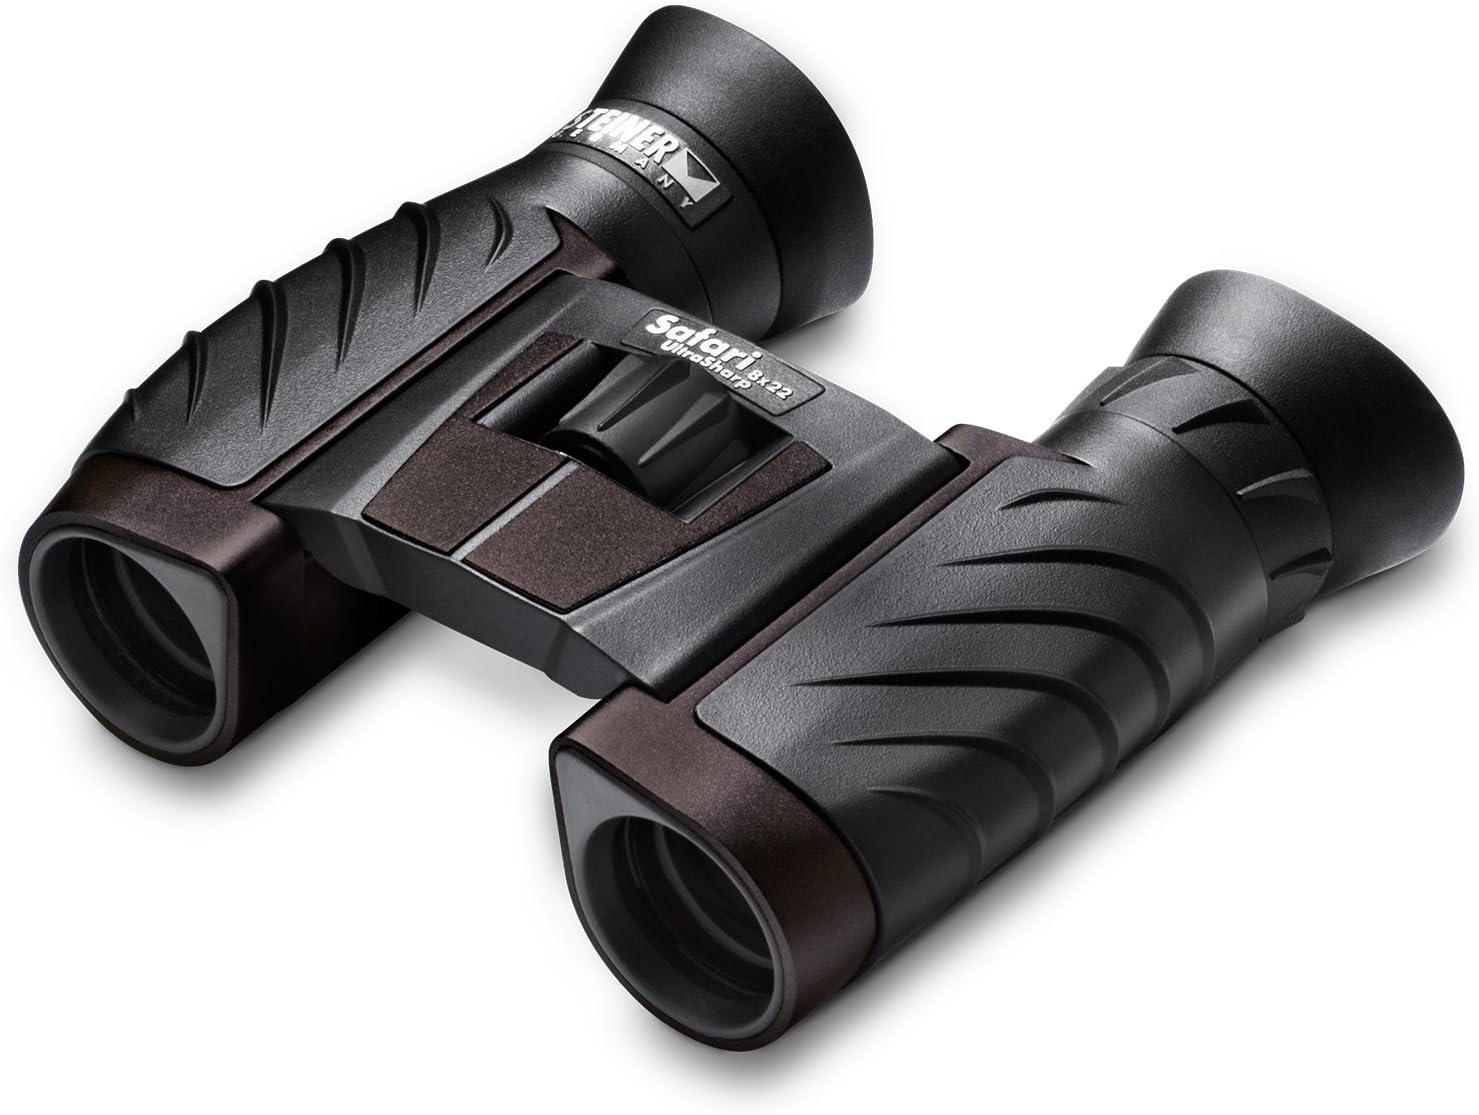 Steiner 8x22 Safari UltraSharp Binocular